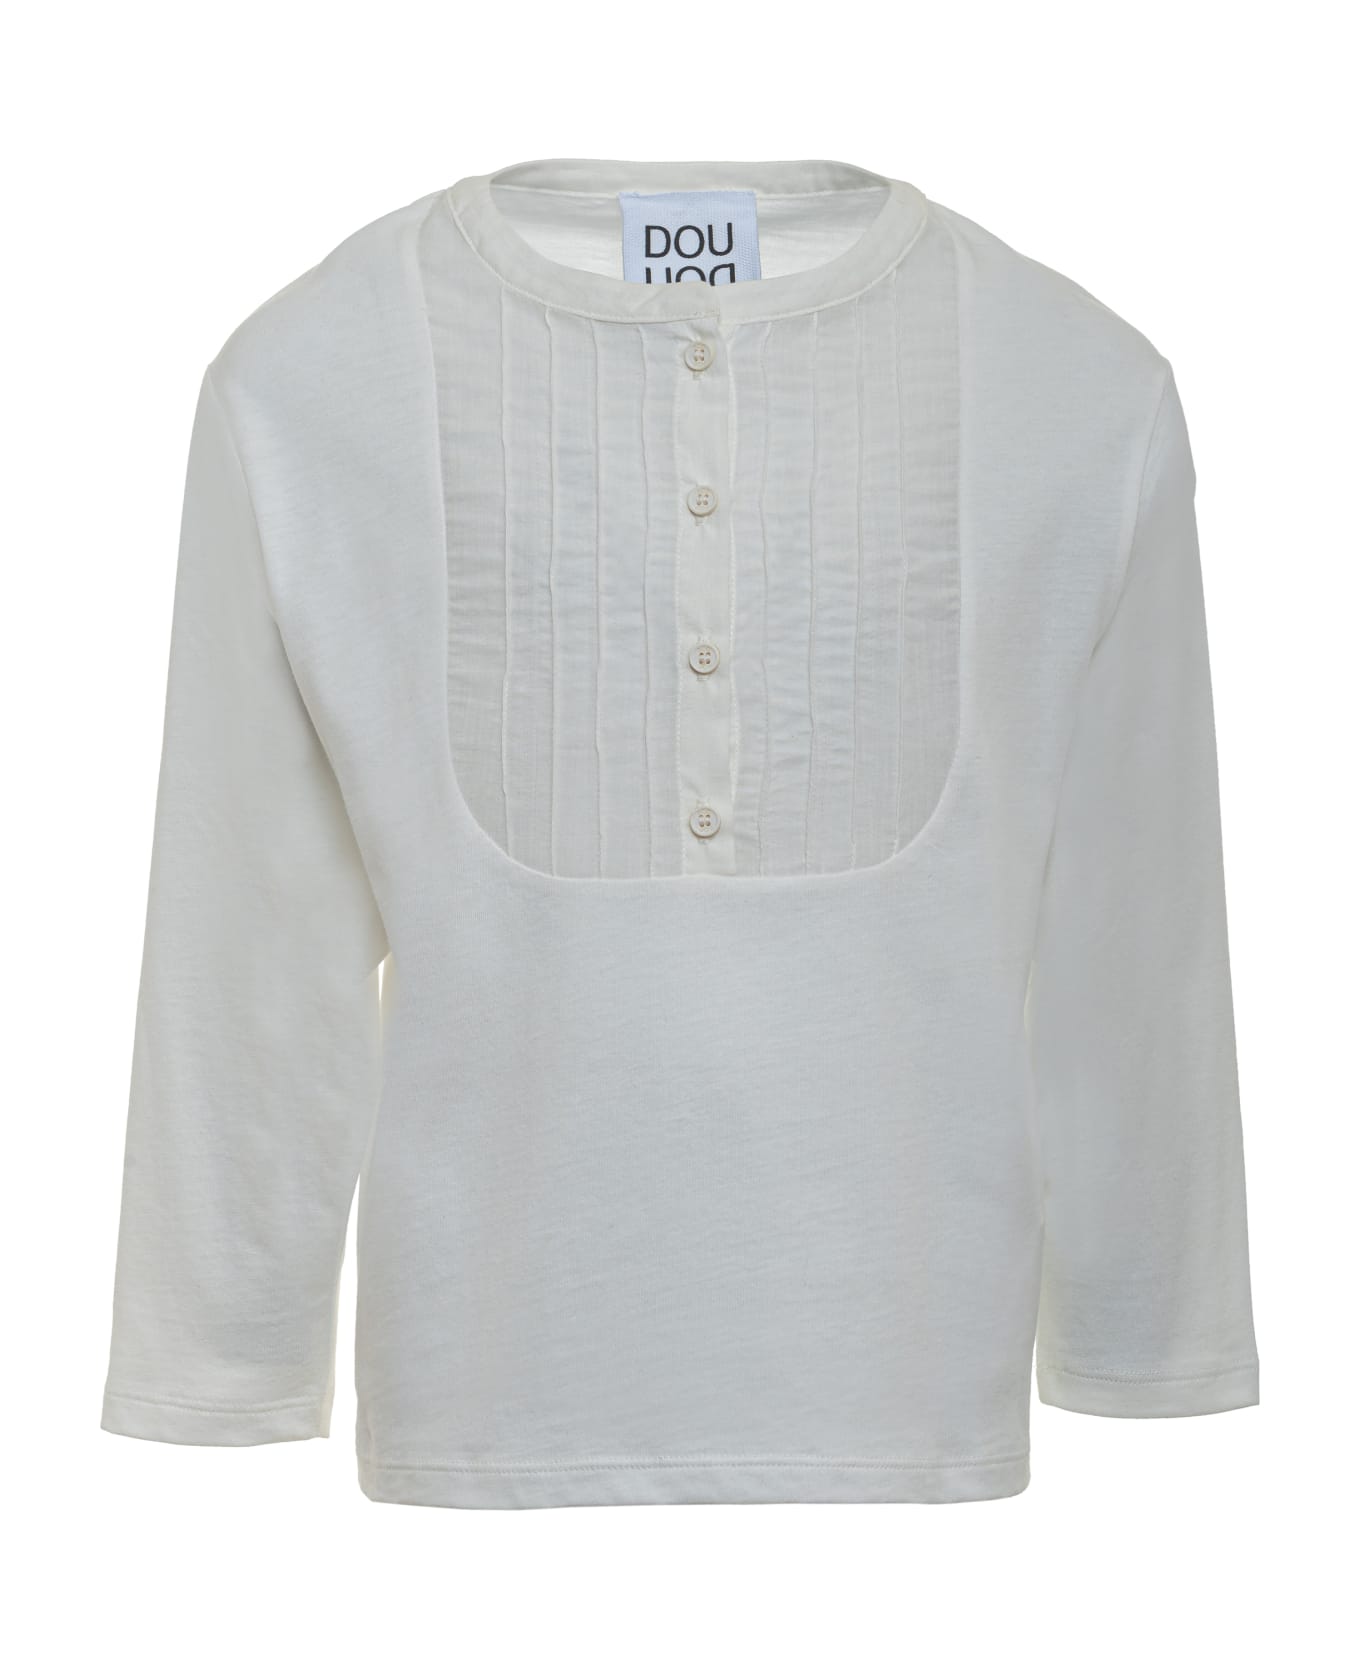 Douuod Long-sleeved T-shirt - Cream